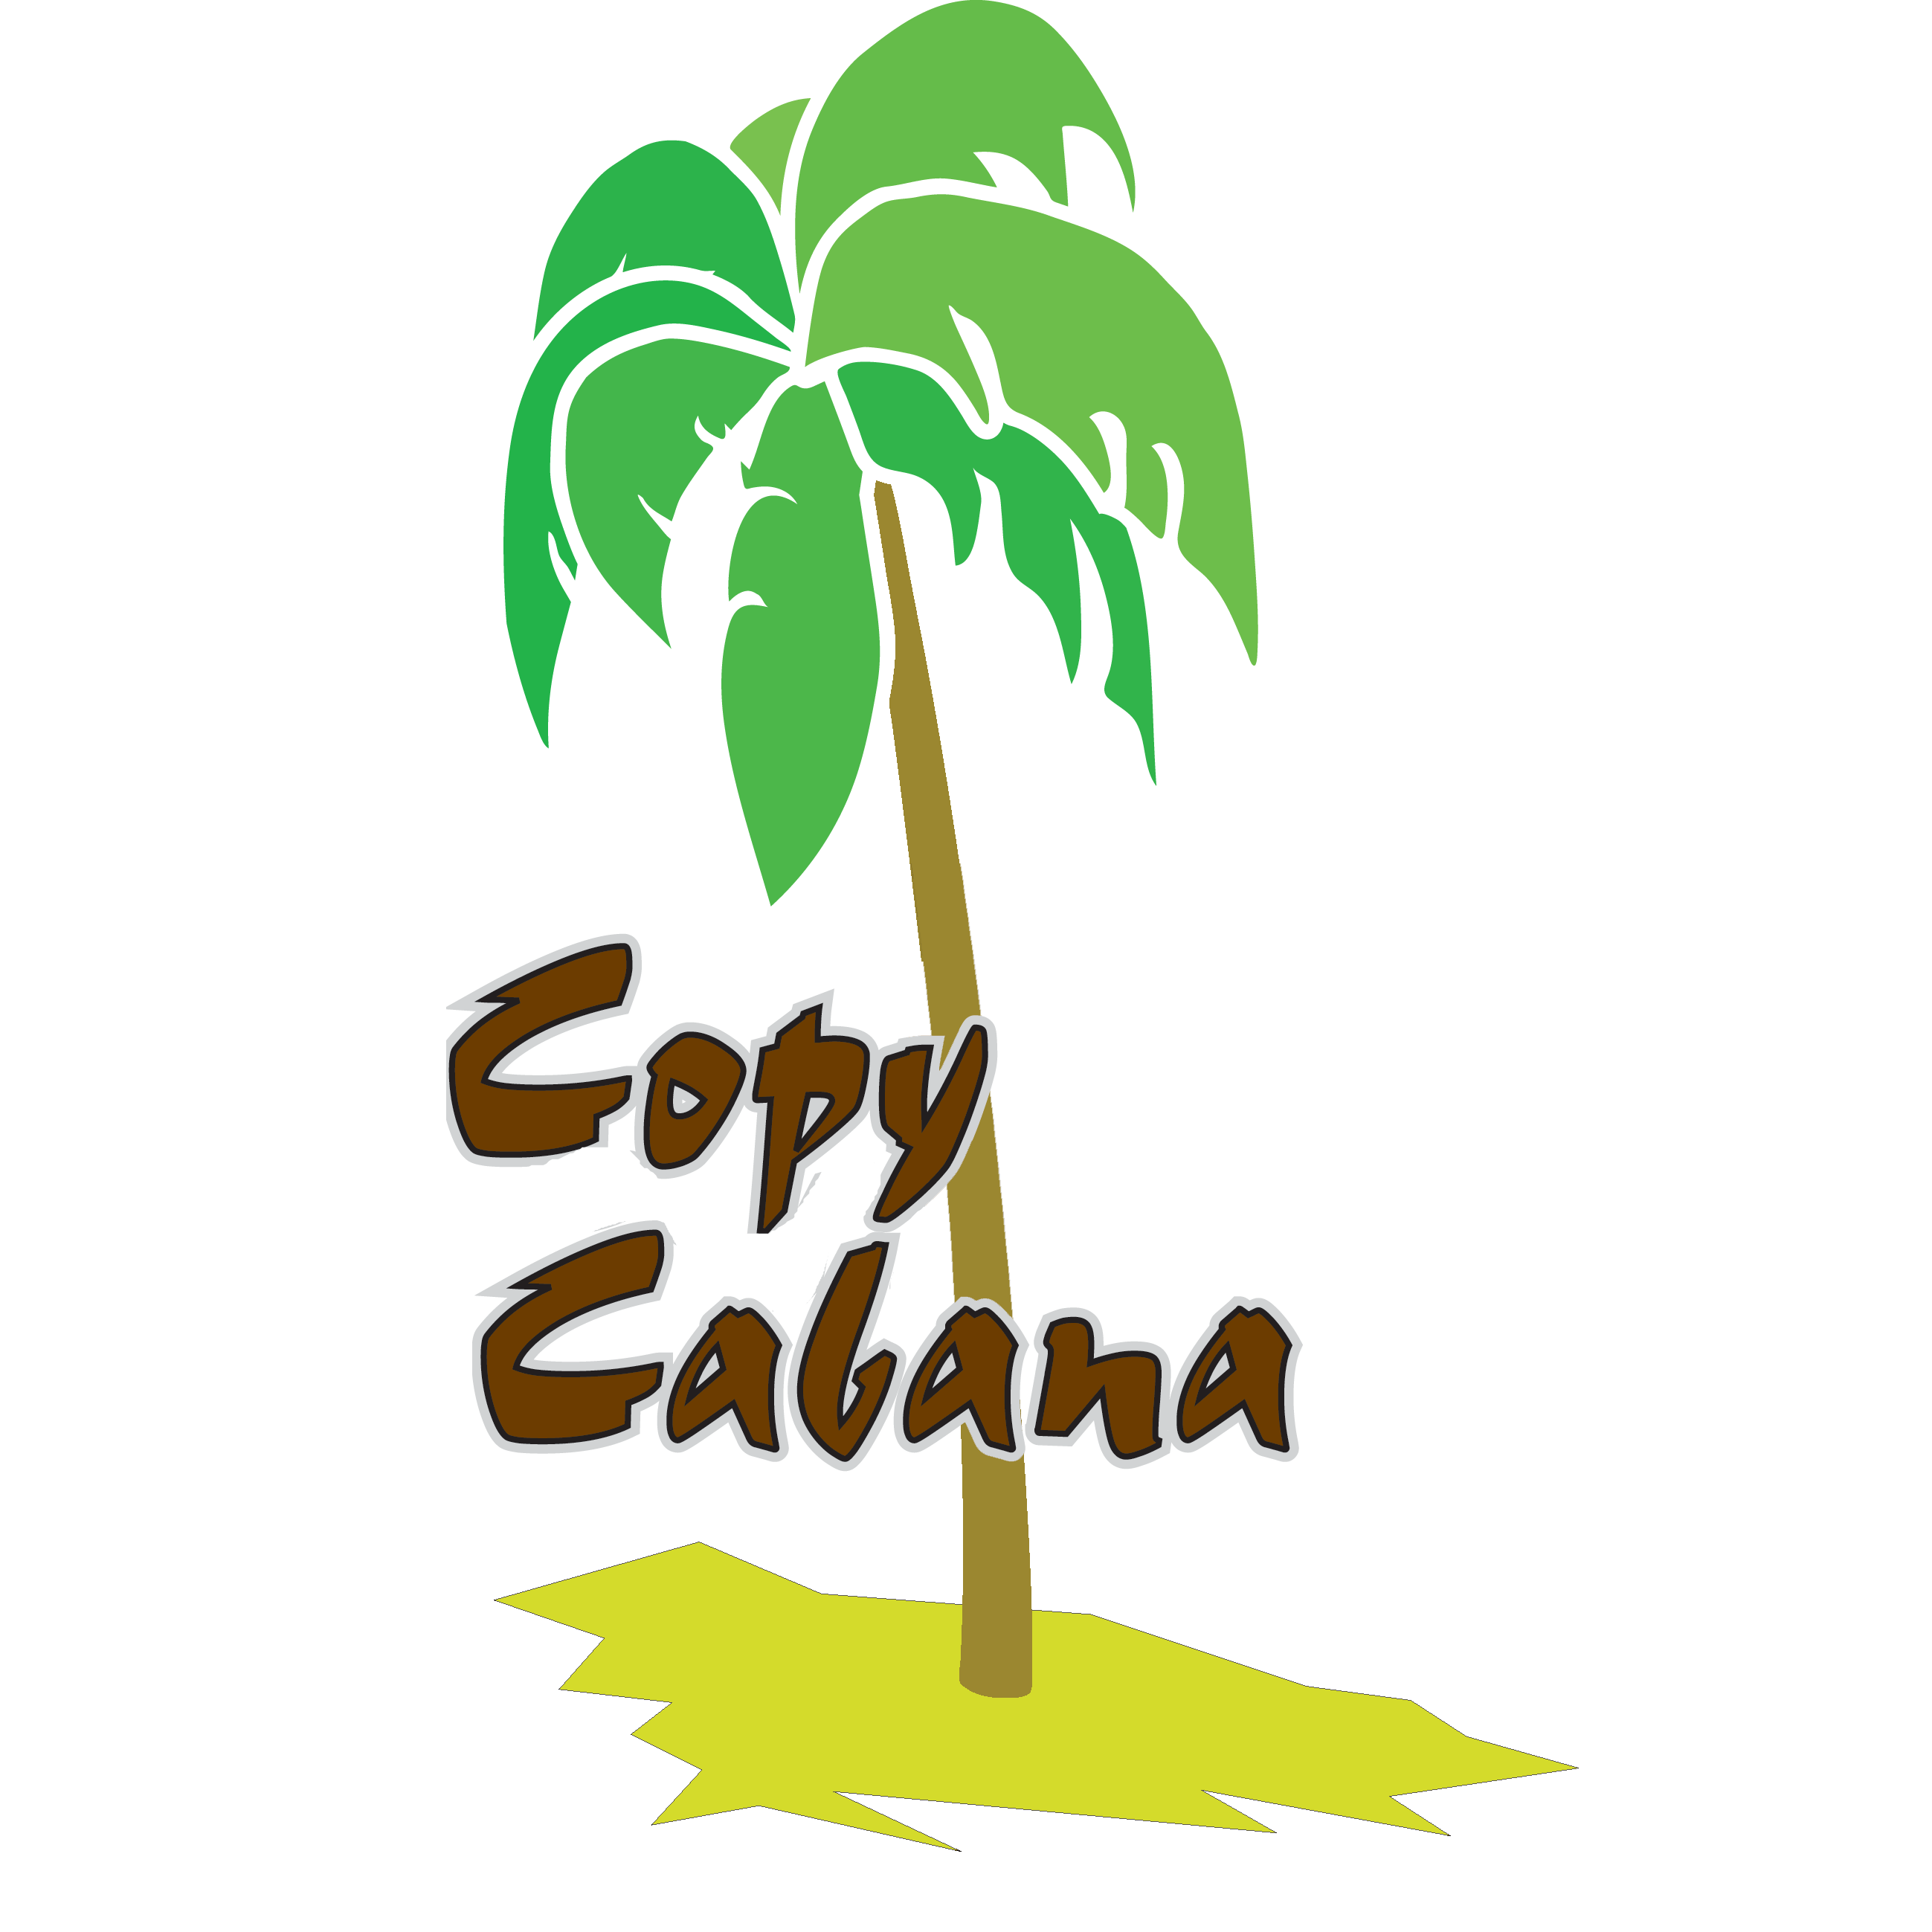 Copy Cabana Digitaldruckerei Logo